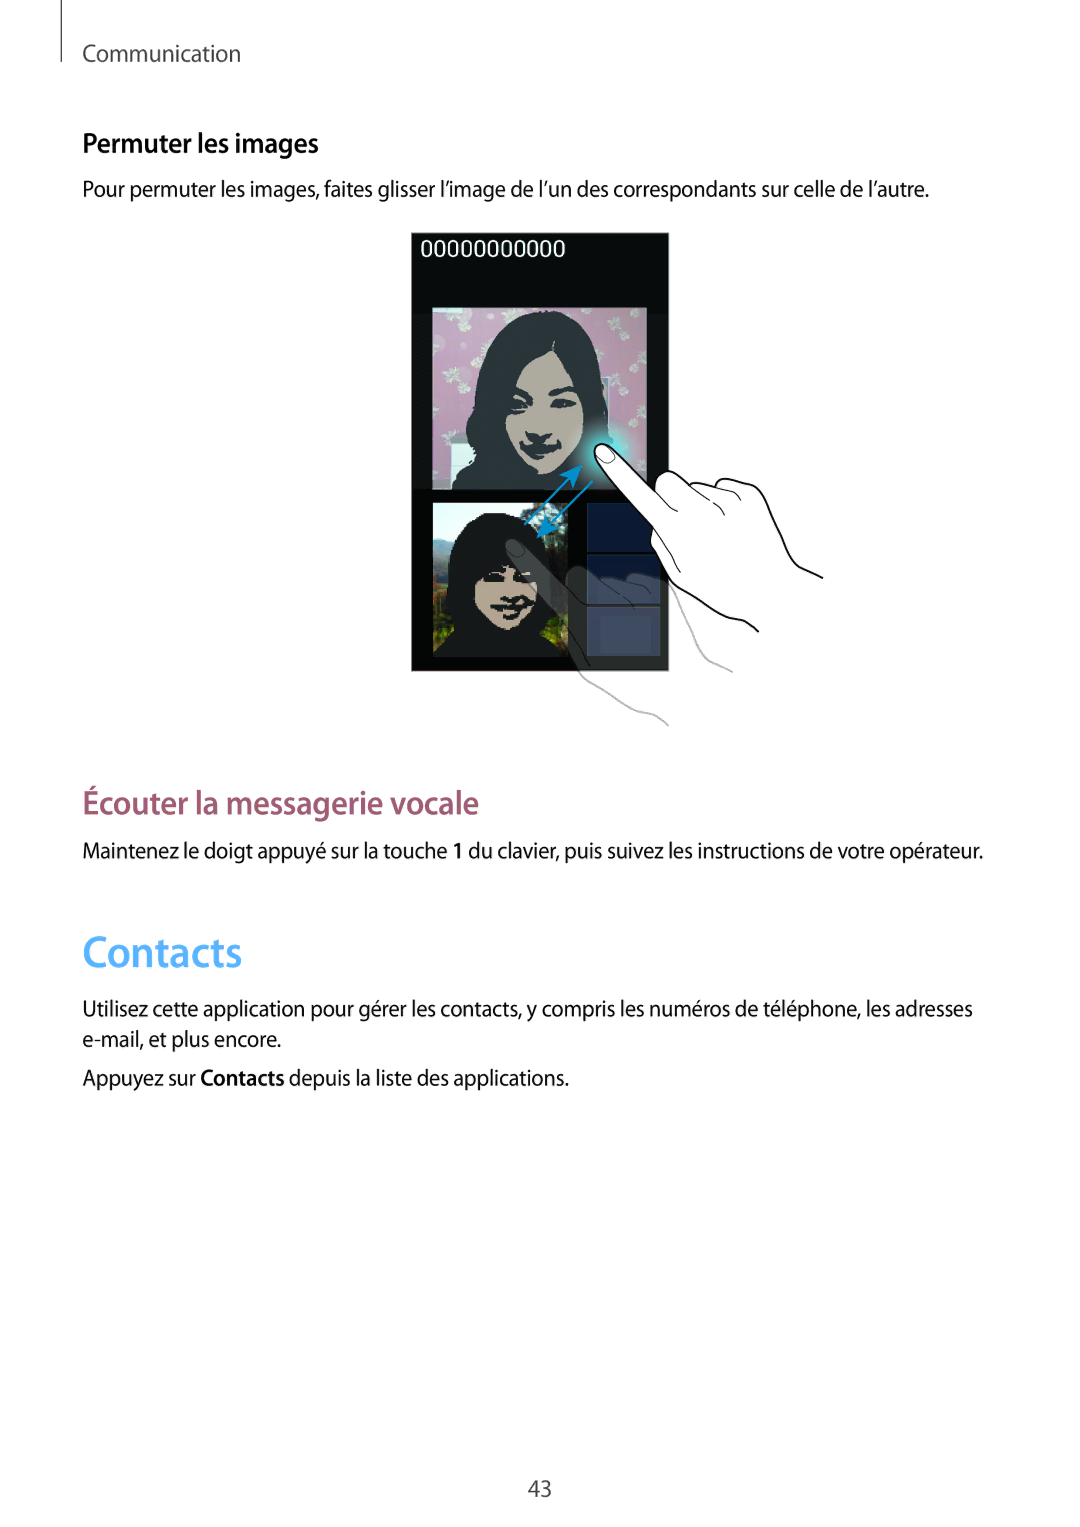 Samsung SM-G3500ZKANRJ, SM-G3500ZWAVGF, SM-G3500ZWANRJ manual Contacts, Écouter la messagerie vocale, Permuter les images 